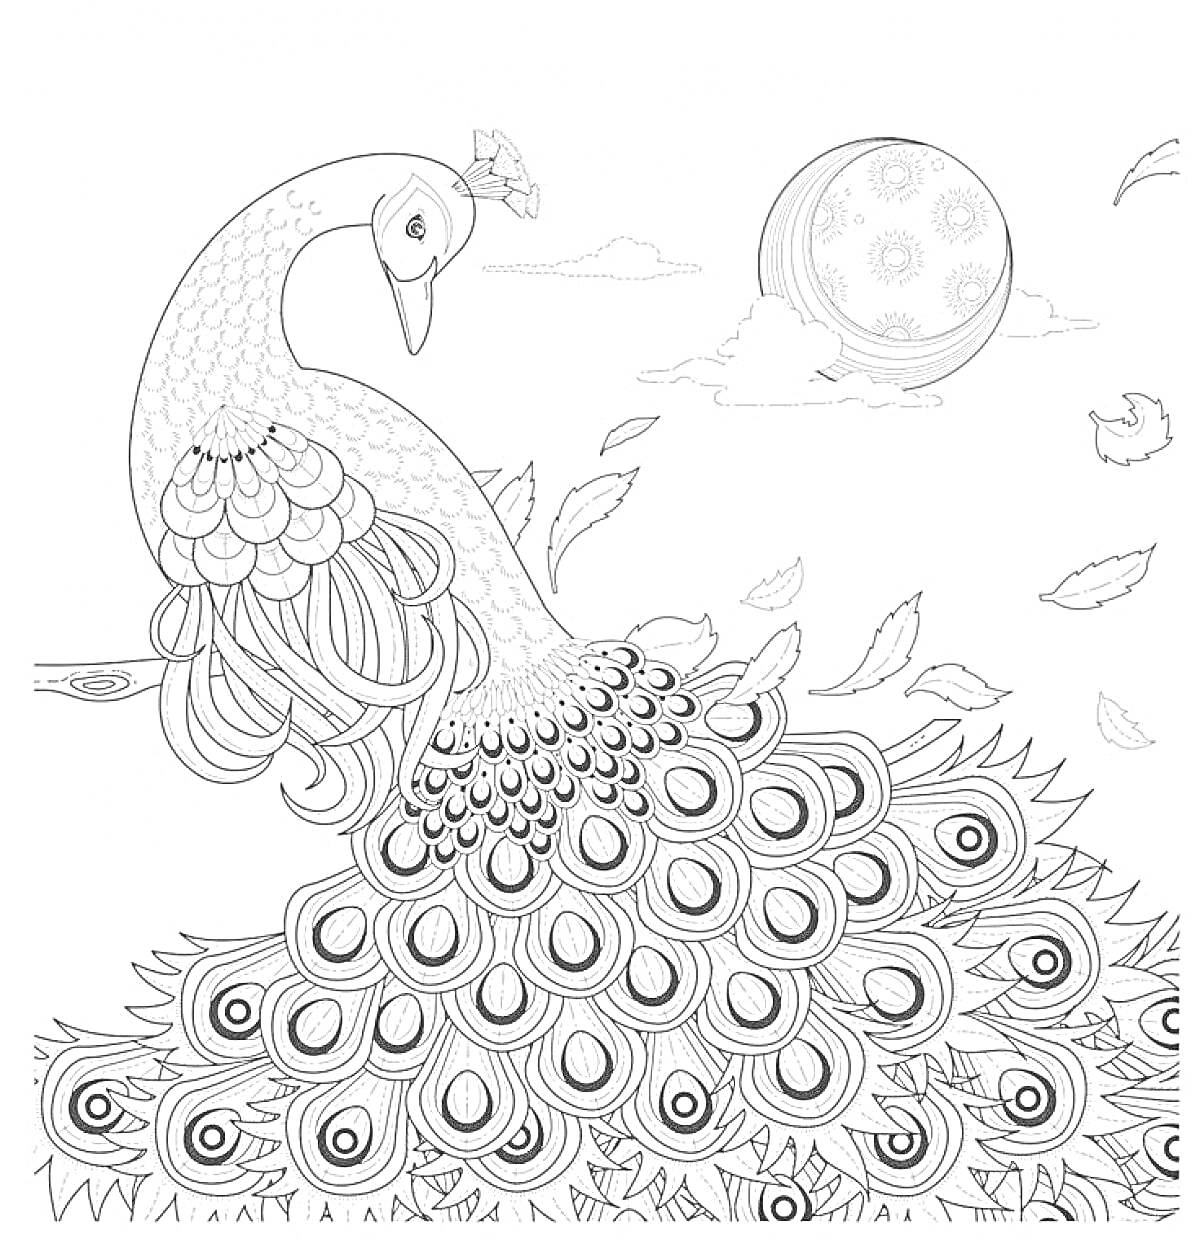 Раскраска Антистресс раскраска с павлином, разлетающимися листьями и луной на фоне облаков